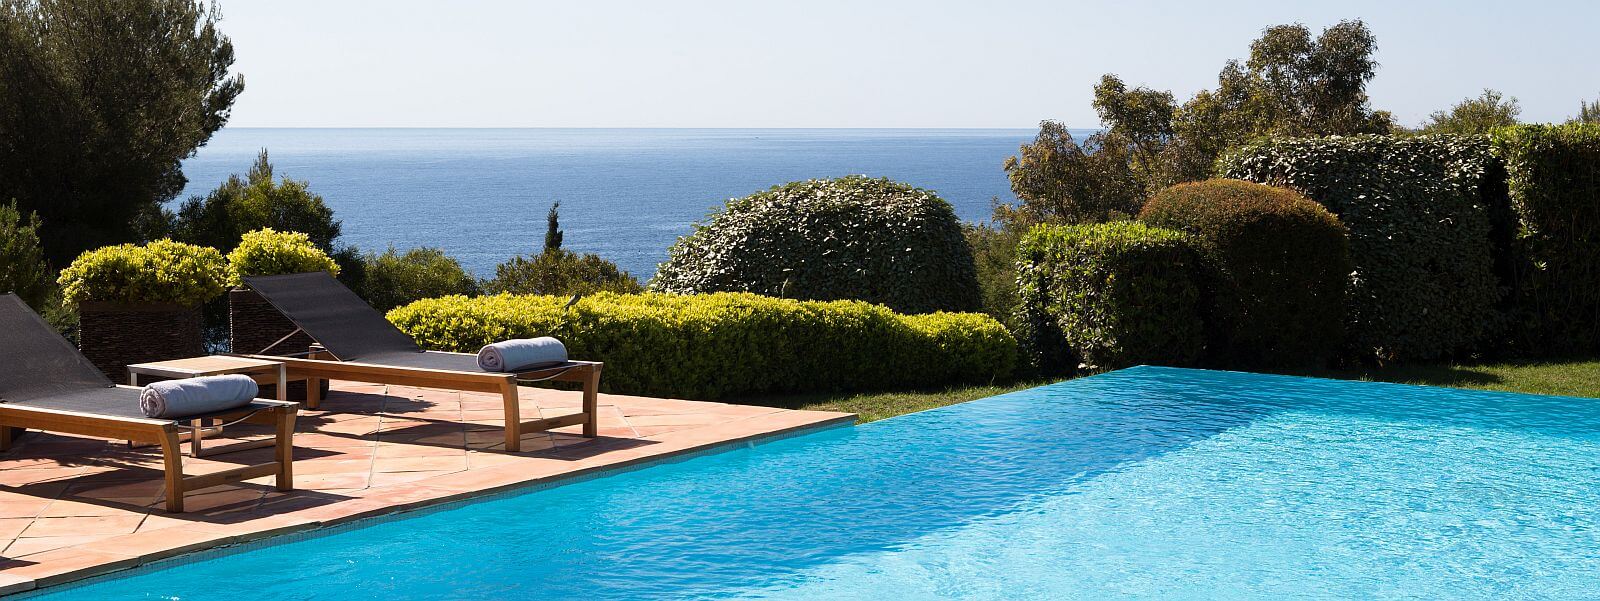 Private Villa in Ramatuelle Frankreich it privatem Pool mit Liegen und Blick über das Grün bis zum Mittelmeer